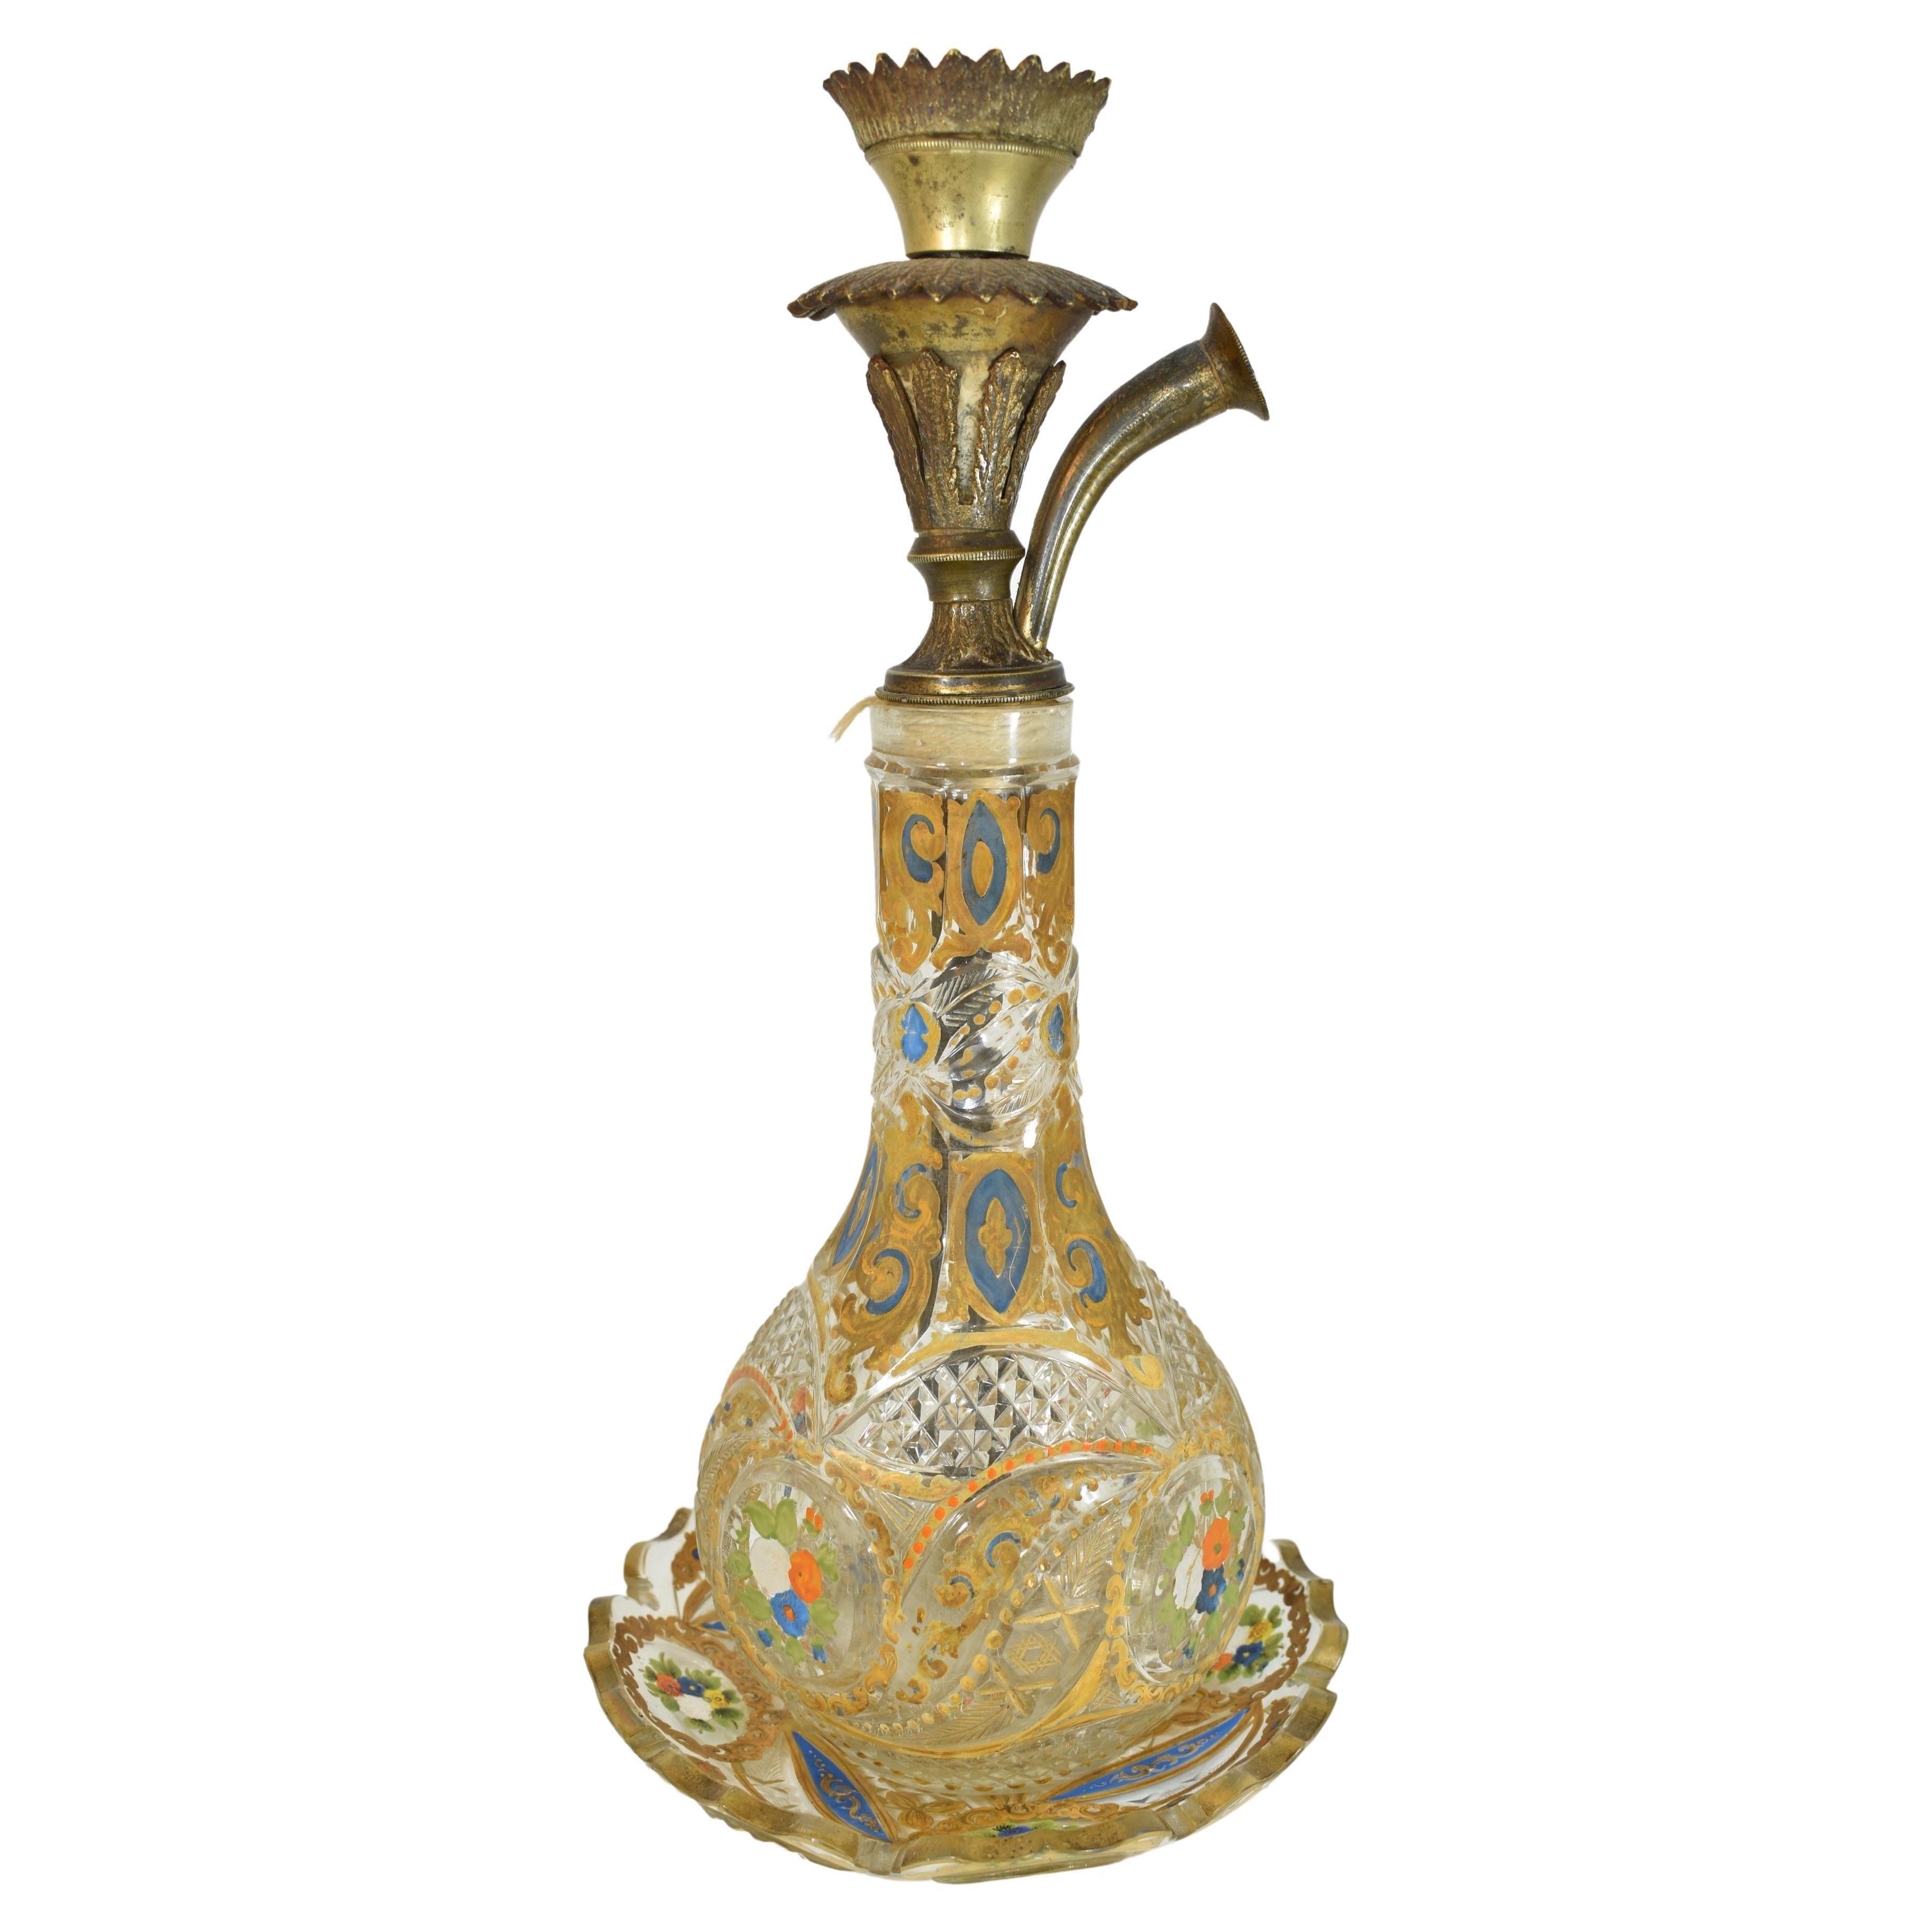 Eine böhmische emaillierte und geschliffene Klarglas-Wasserpfeifenbasis und die dazugehörige Platte
Mitte des 19. Jahrhunderts
Sowohl der Teller als auch die Flasche sind wunderschön geschliffen und mit Blumen und vergoldeten Schnörkeln